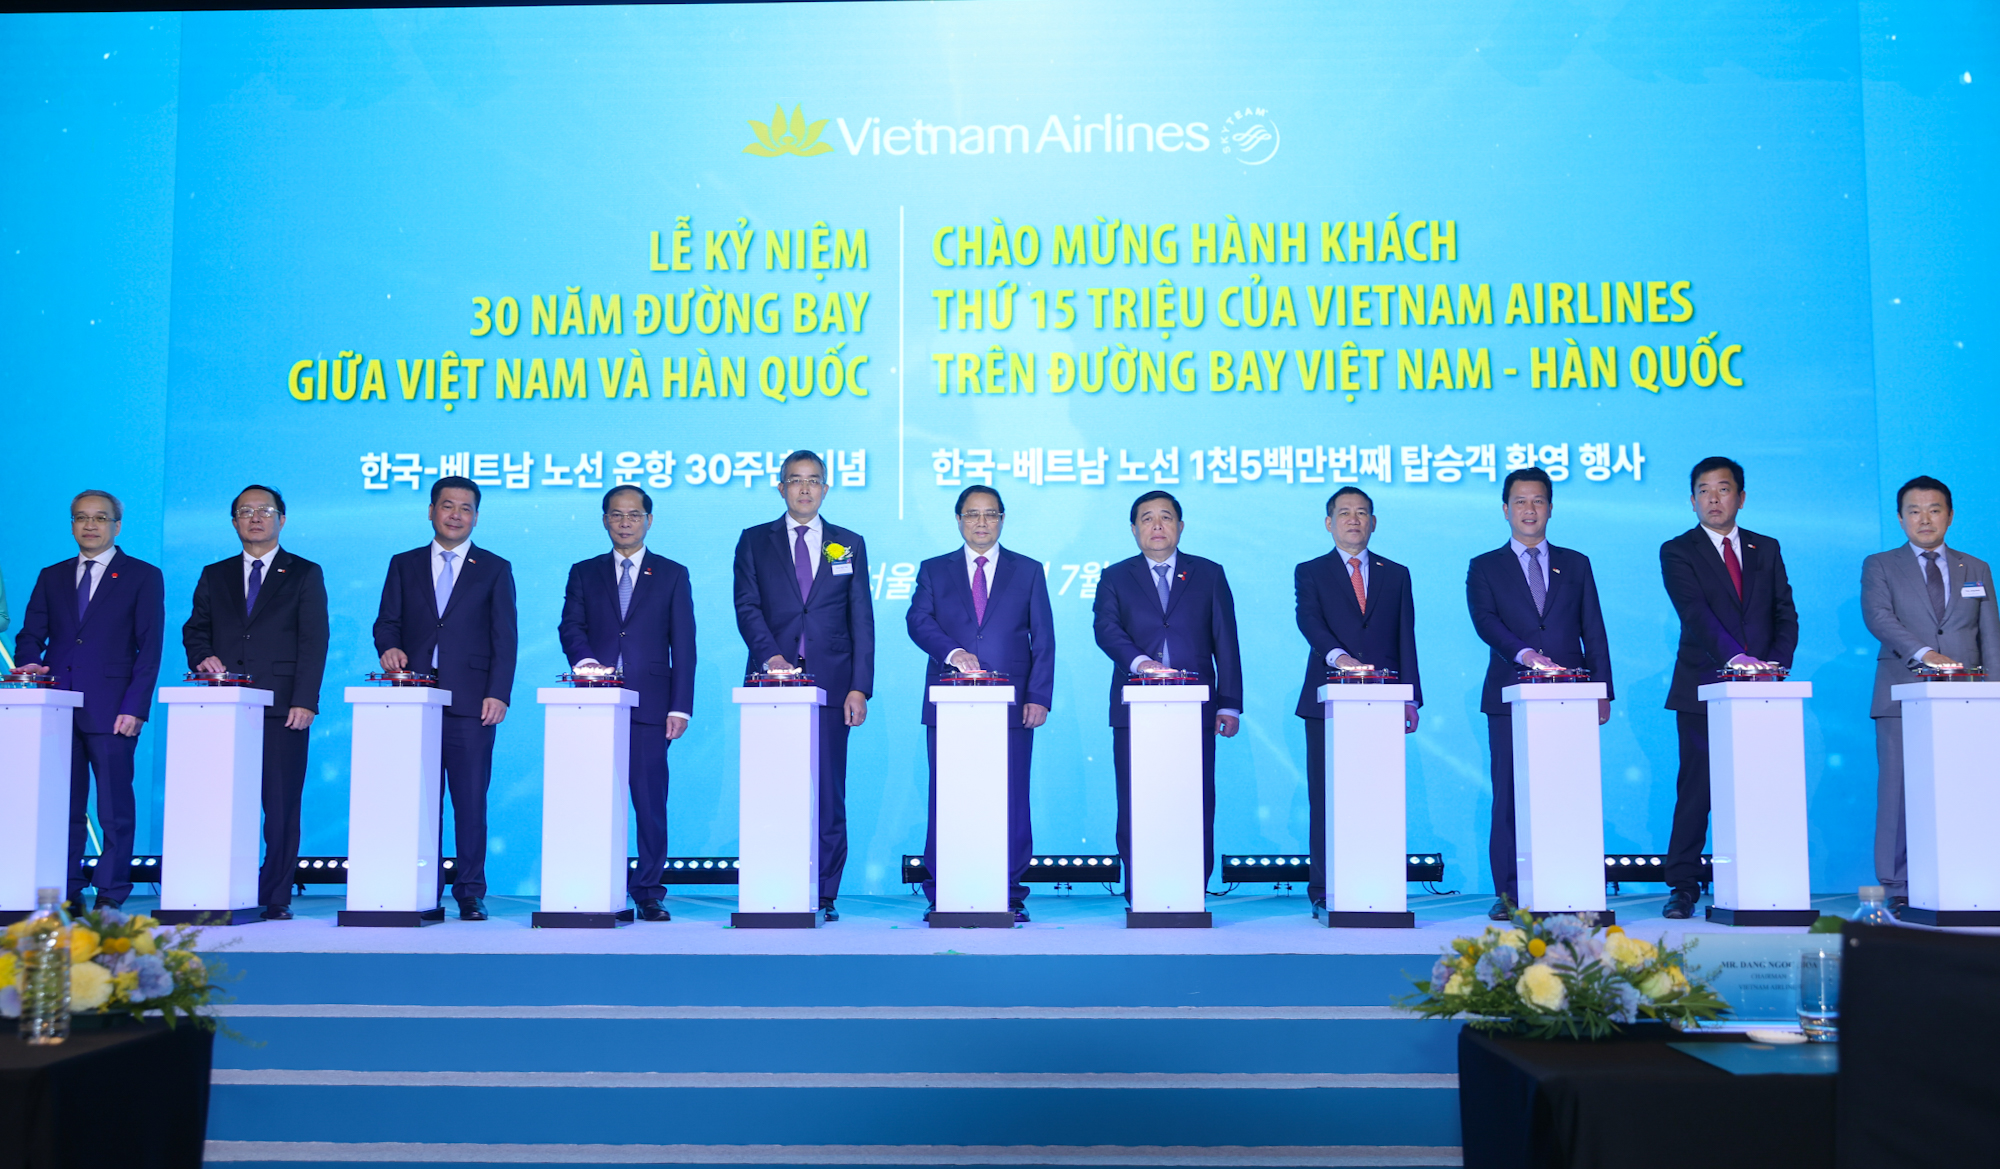 Thủ tướng Phạm Minh Chính dự lễ kỷ niệm 30 năm đường bay thẳng và chào đón hành khách thứ 15 triệu trên đường bay Việt Nam - Hàn Quốc của hãng hàng không Vietnam Airlines - Ảnh: VGP/Nhật Bắc